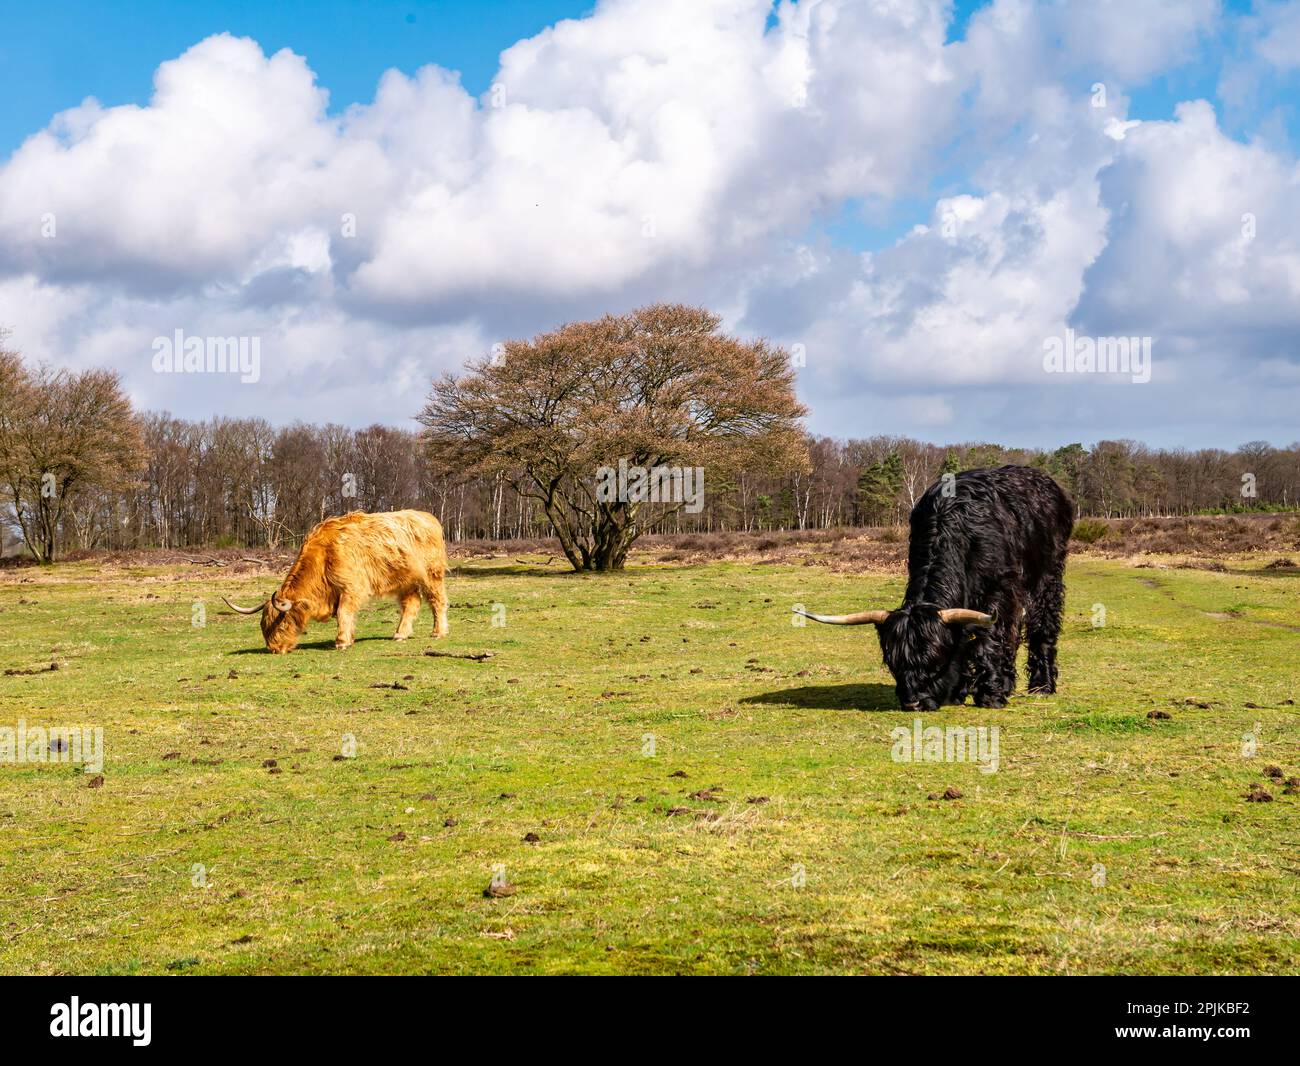 Vaches écossaises hautes terres avec de longs cheveux et cornes broutant l'herbe dans la réserve naturelle Westerheide près de Hilversum, het Gooi, pays-Bas Banque D'Images